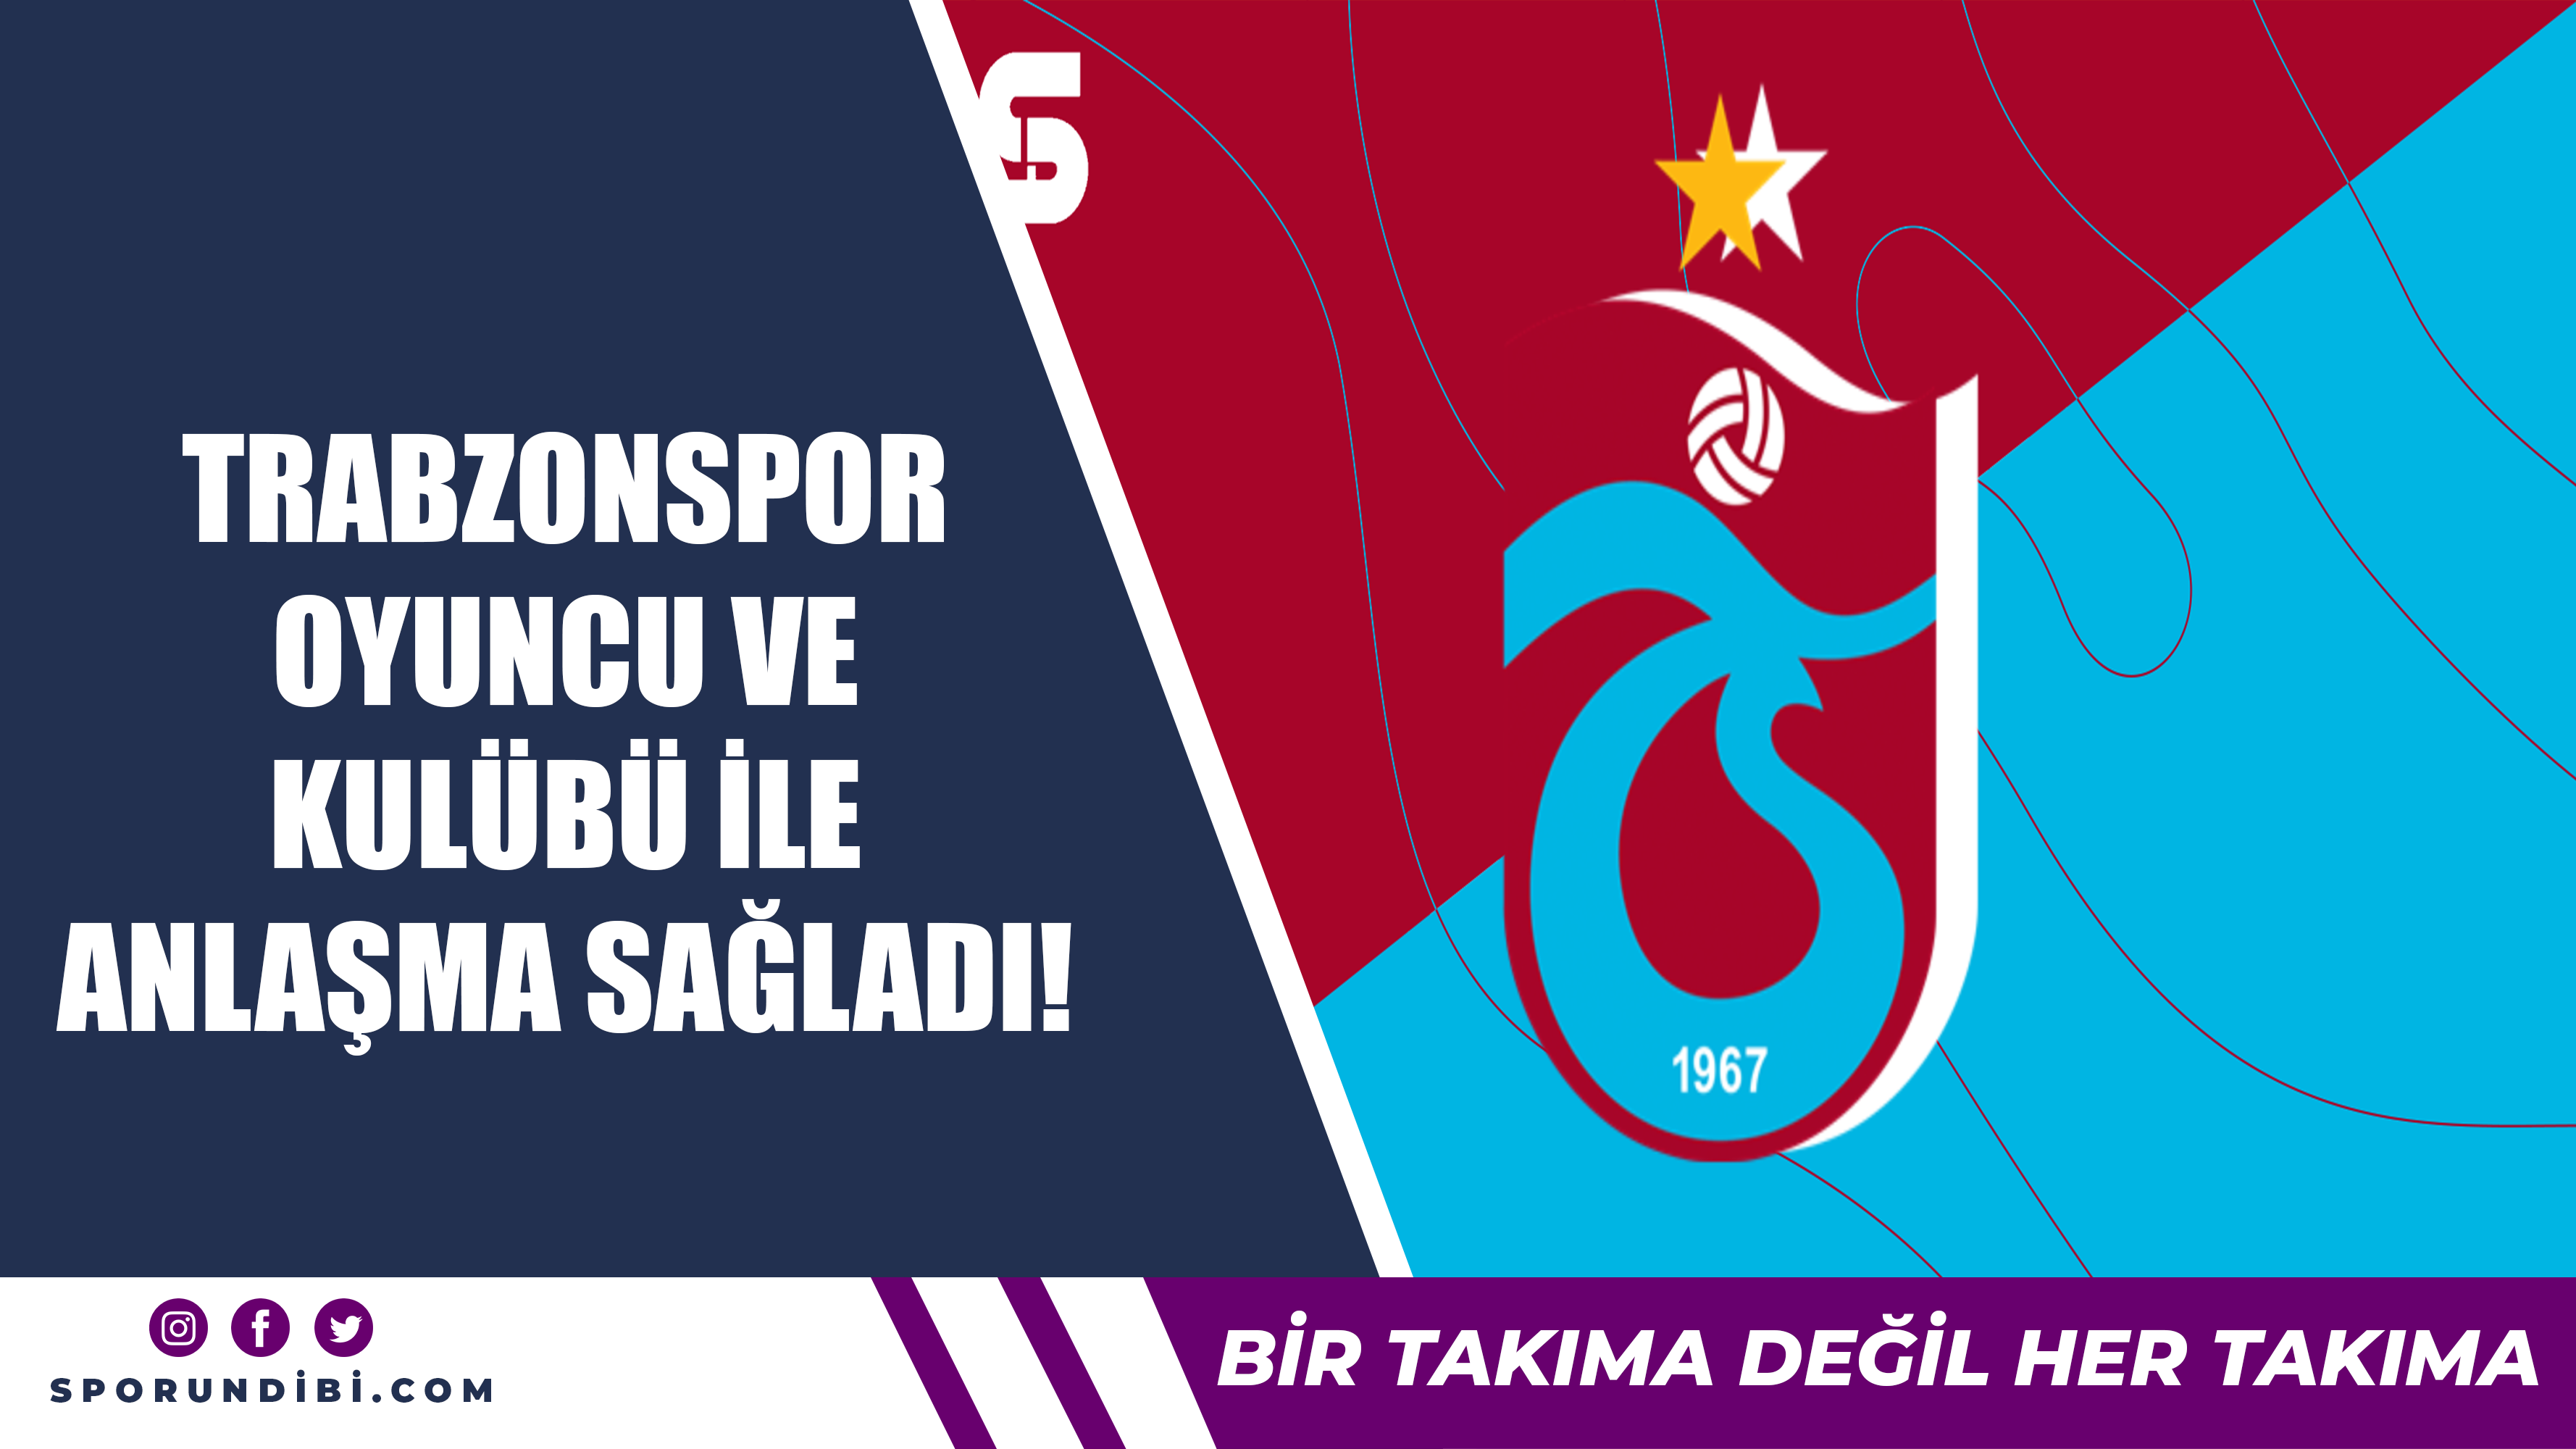 Trabzonspor oyun ve kulübü ile anlaşma sağladı!